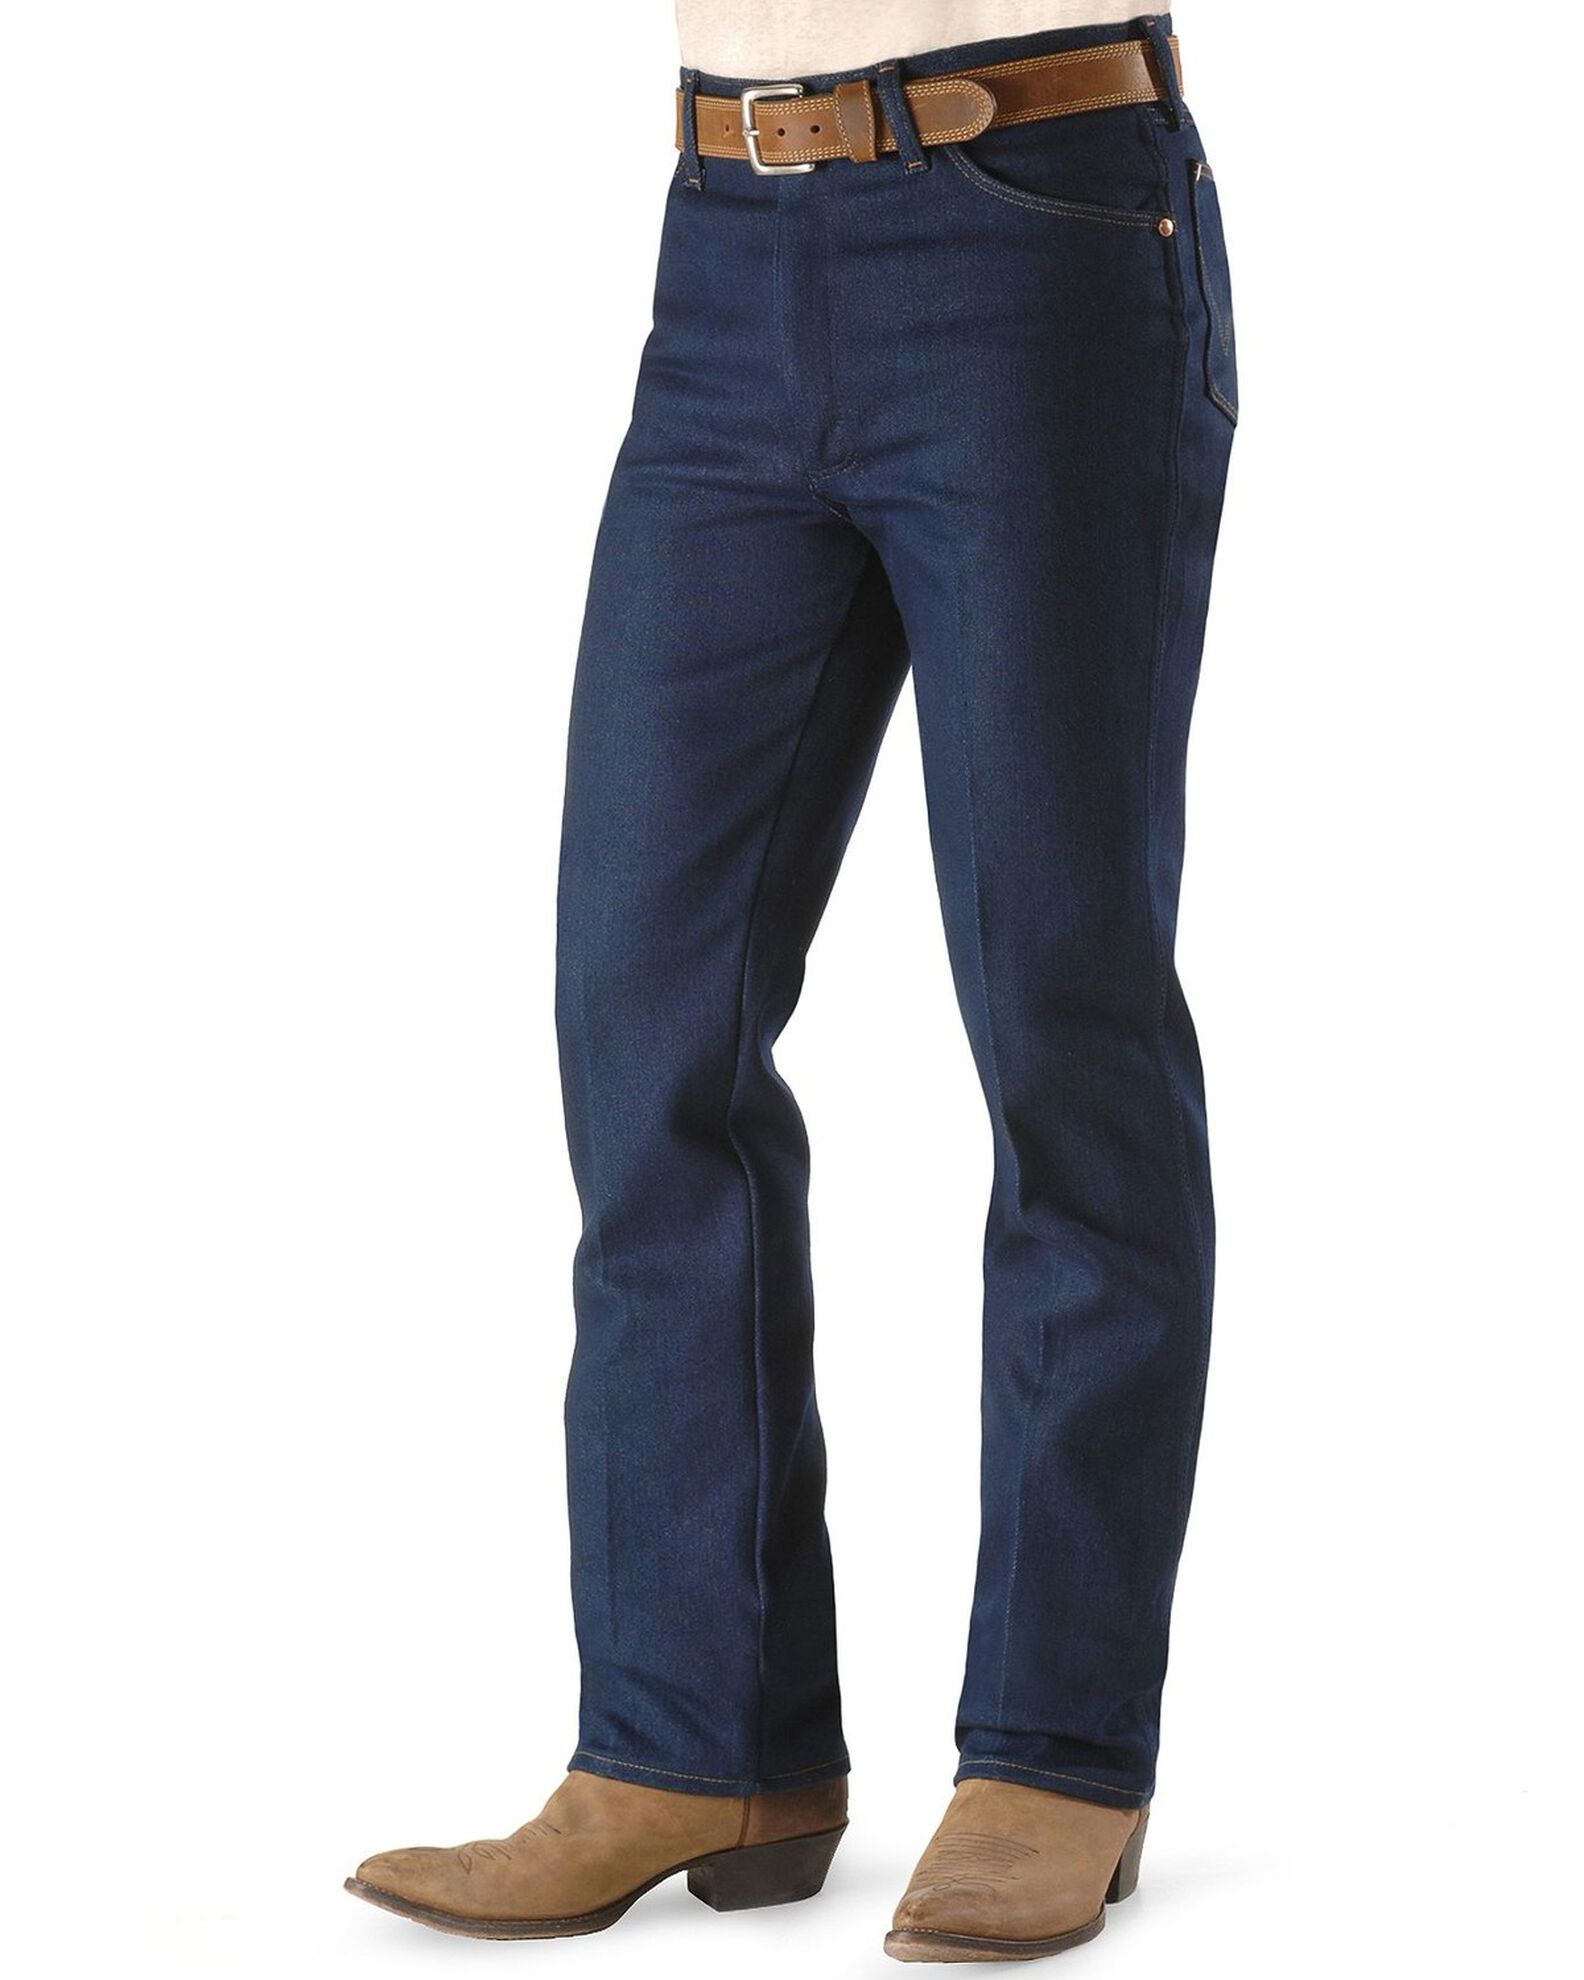 Wrangler Jeans - 947 Regular Fit Stretch